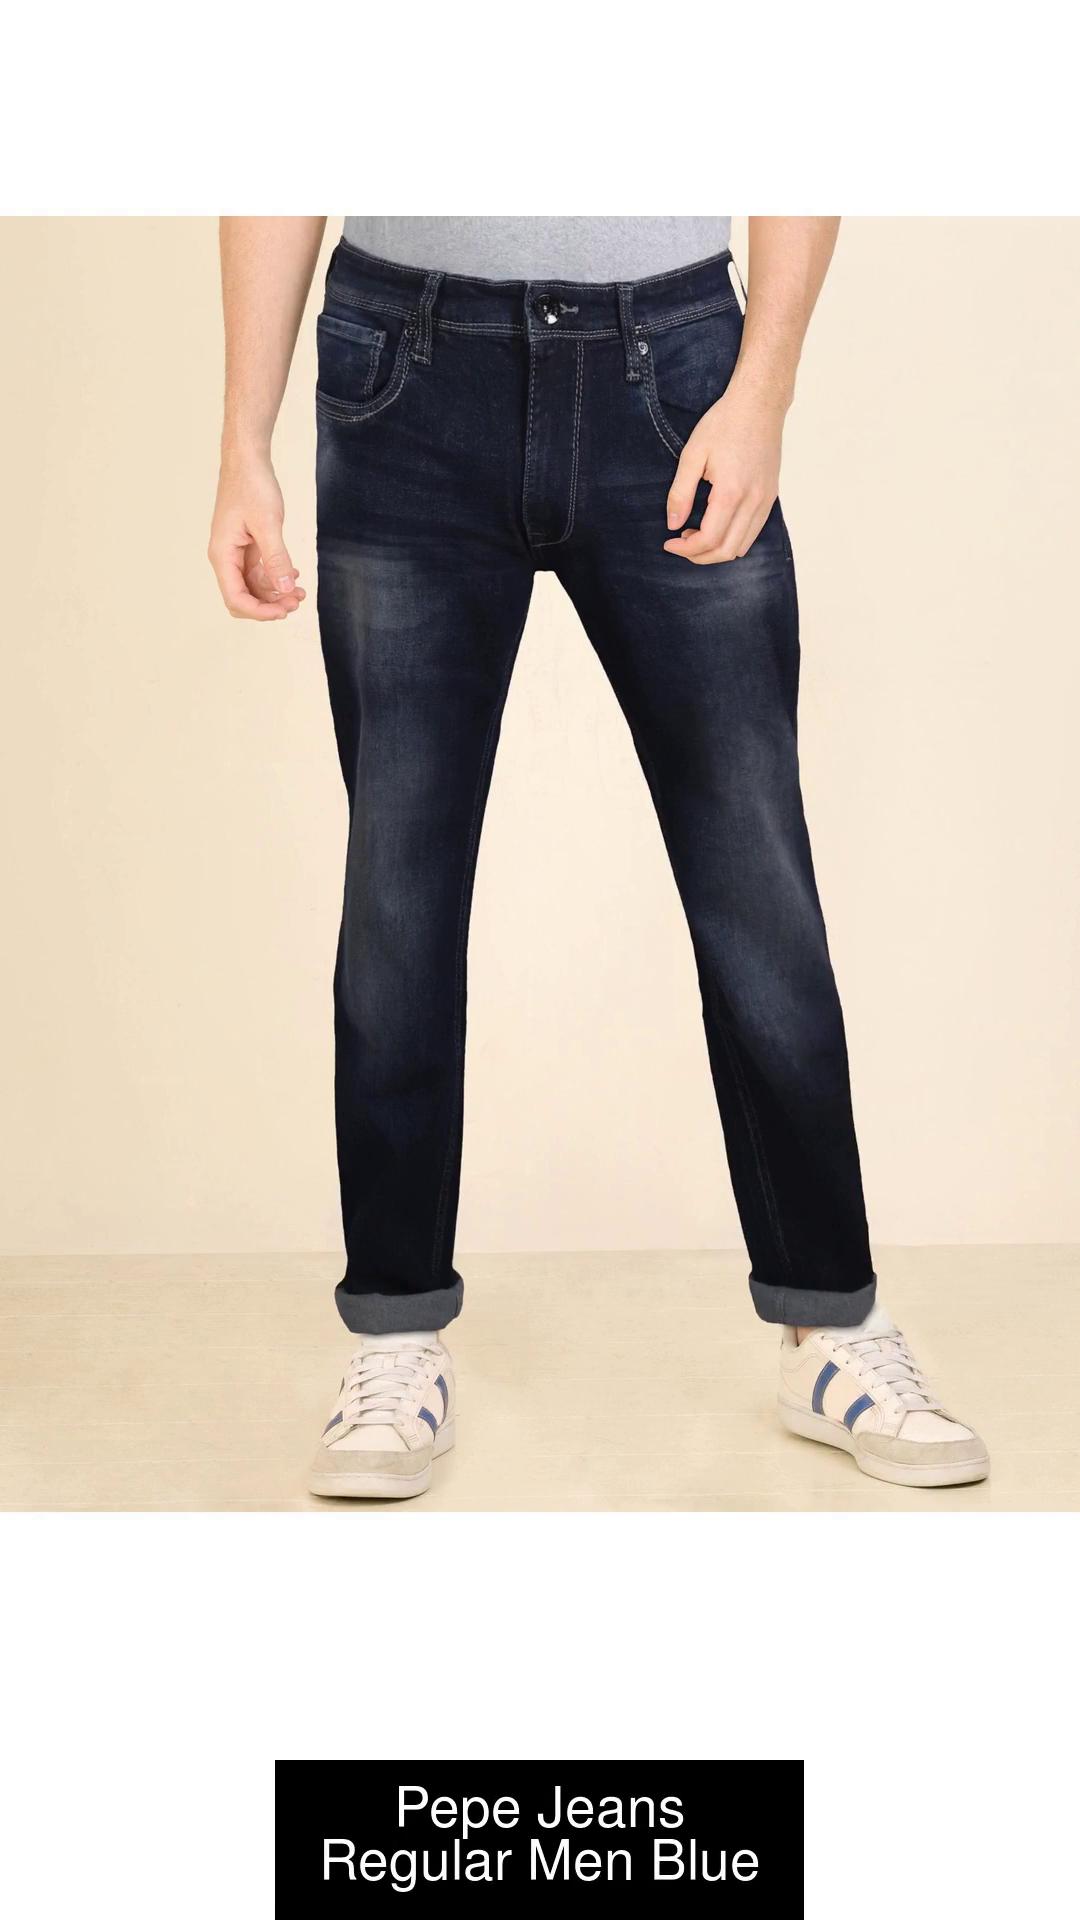 Pepe Jeans Regular Men Blue Jeans - Buy Pepe Jeans Regular Men